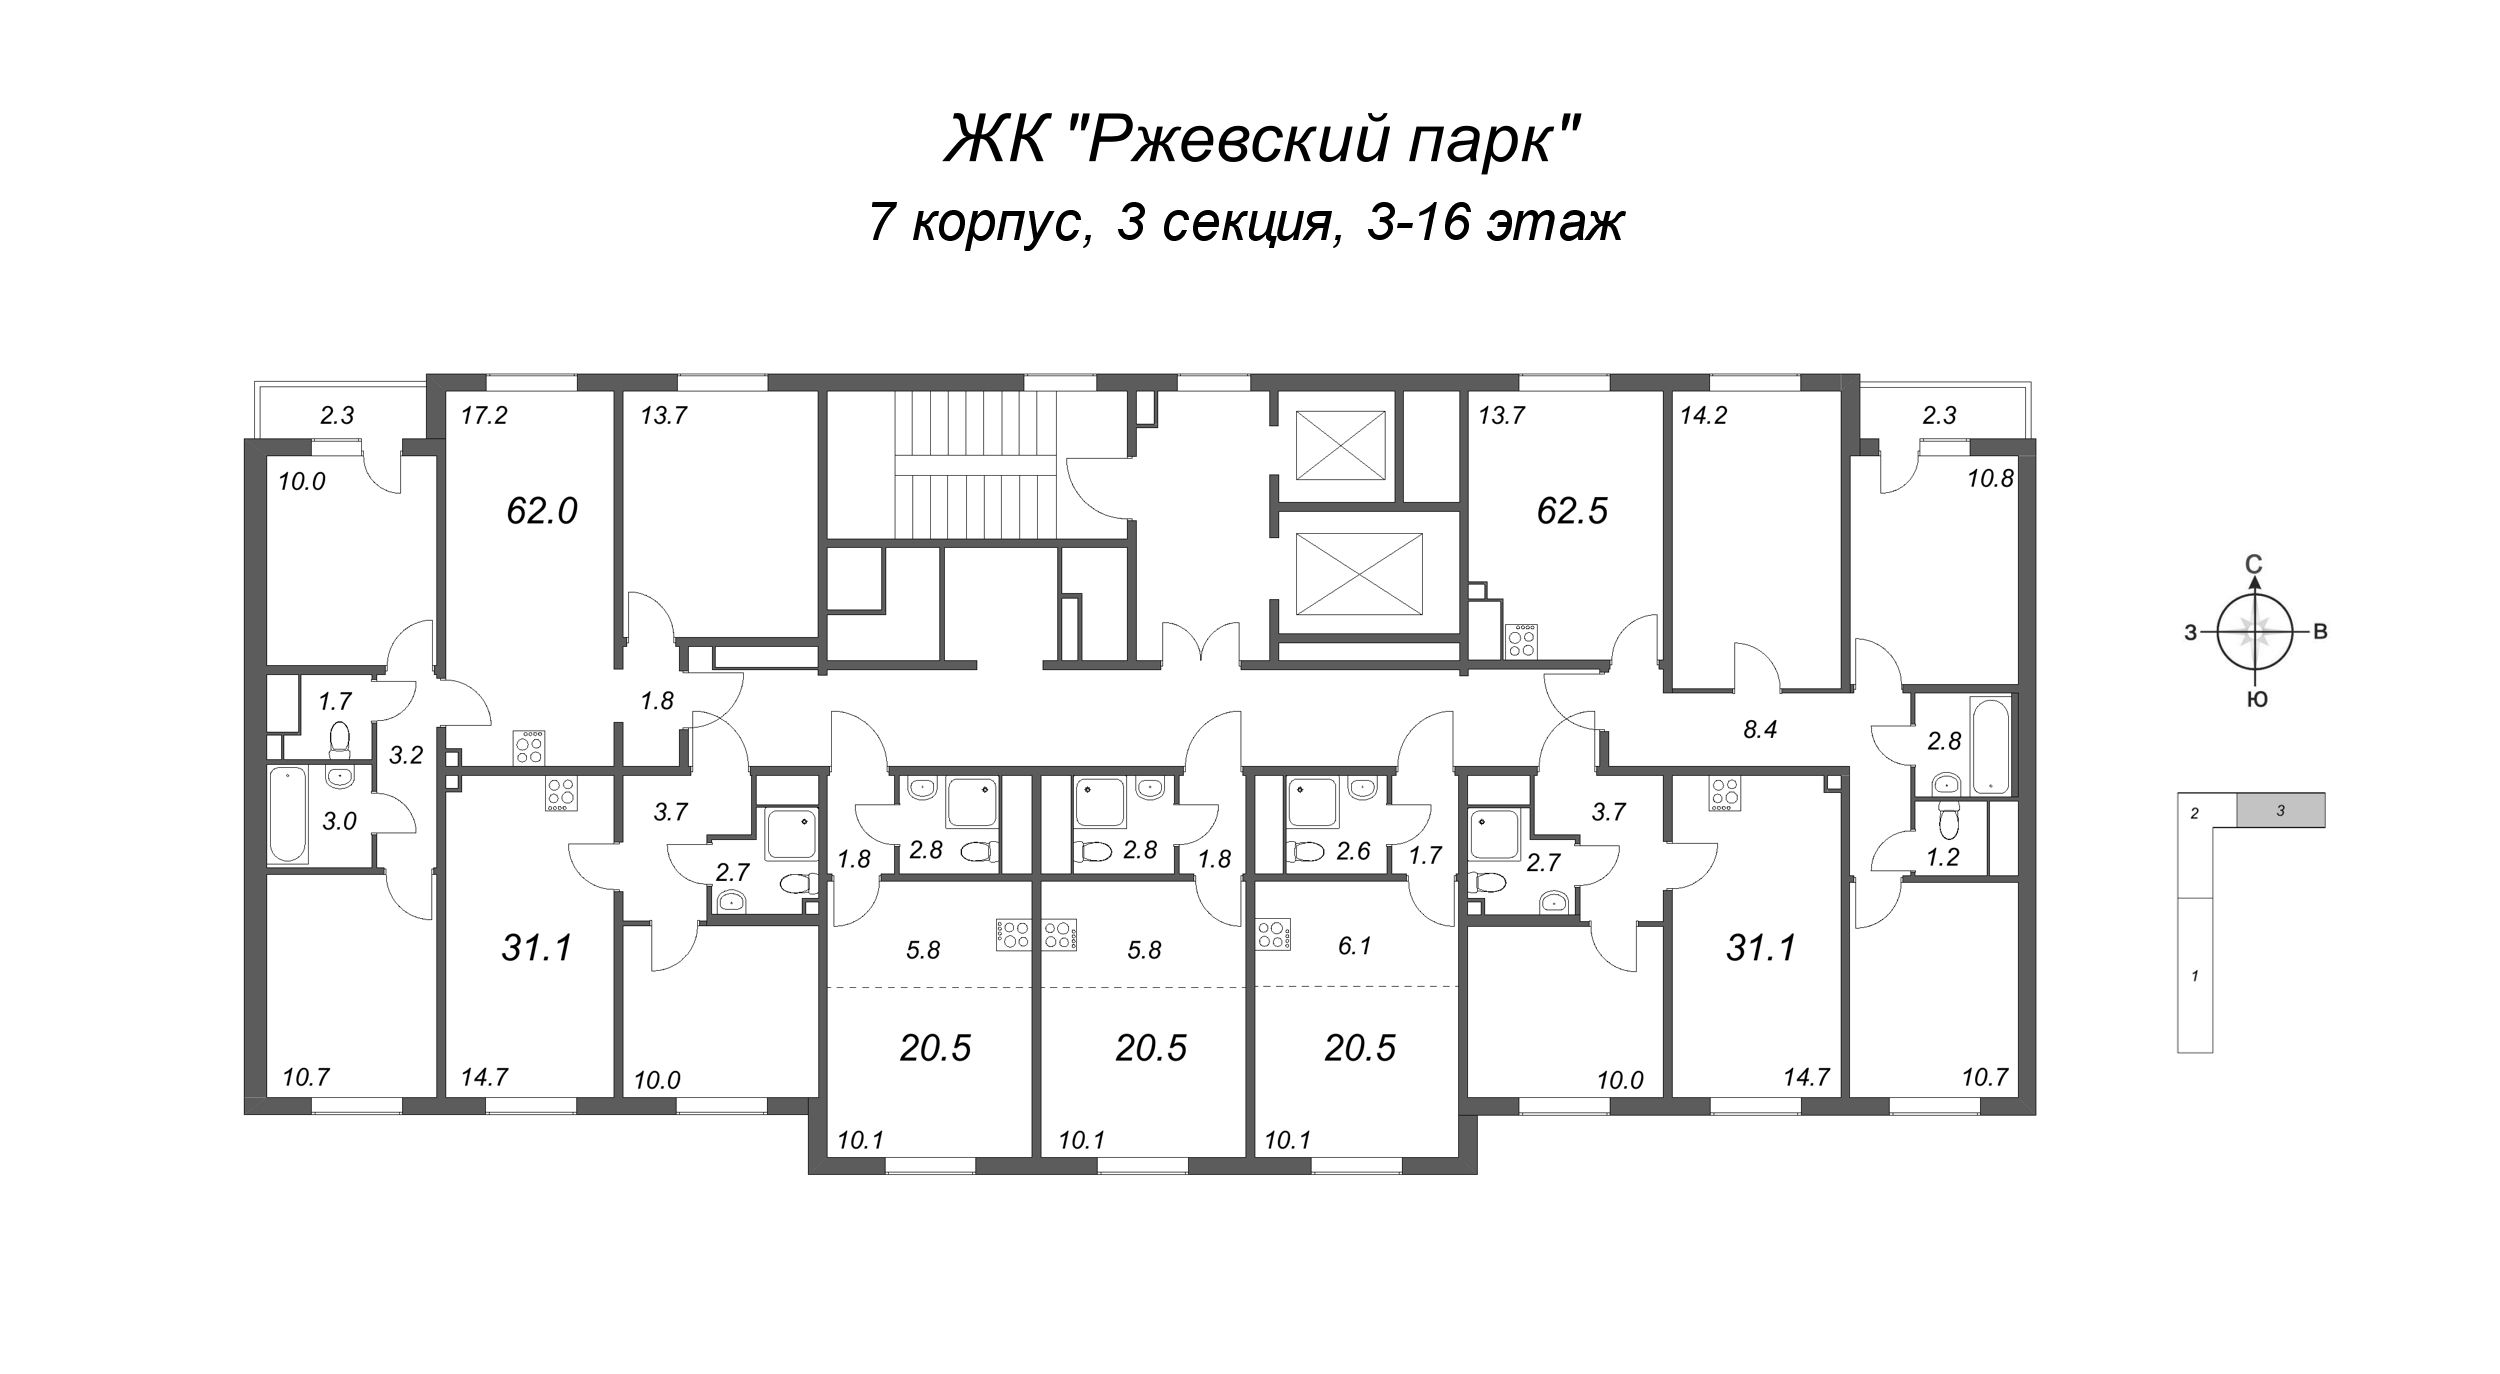 3-комнатная квартира, 62.5 м² в ЖК "ЛСР. Ржевский парк" - планировка этажа